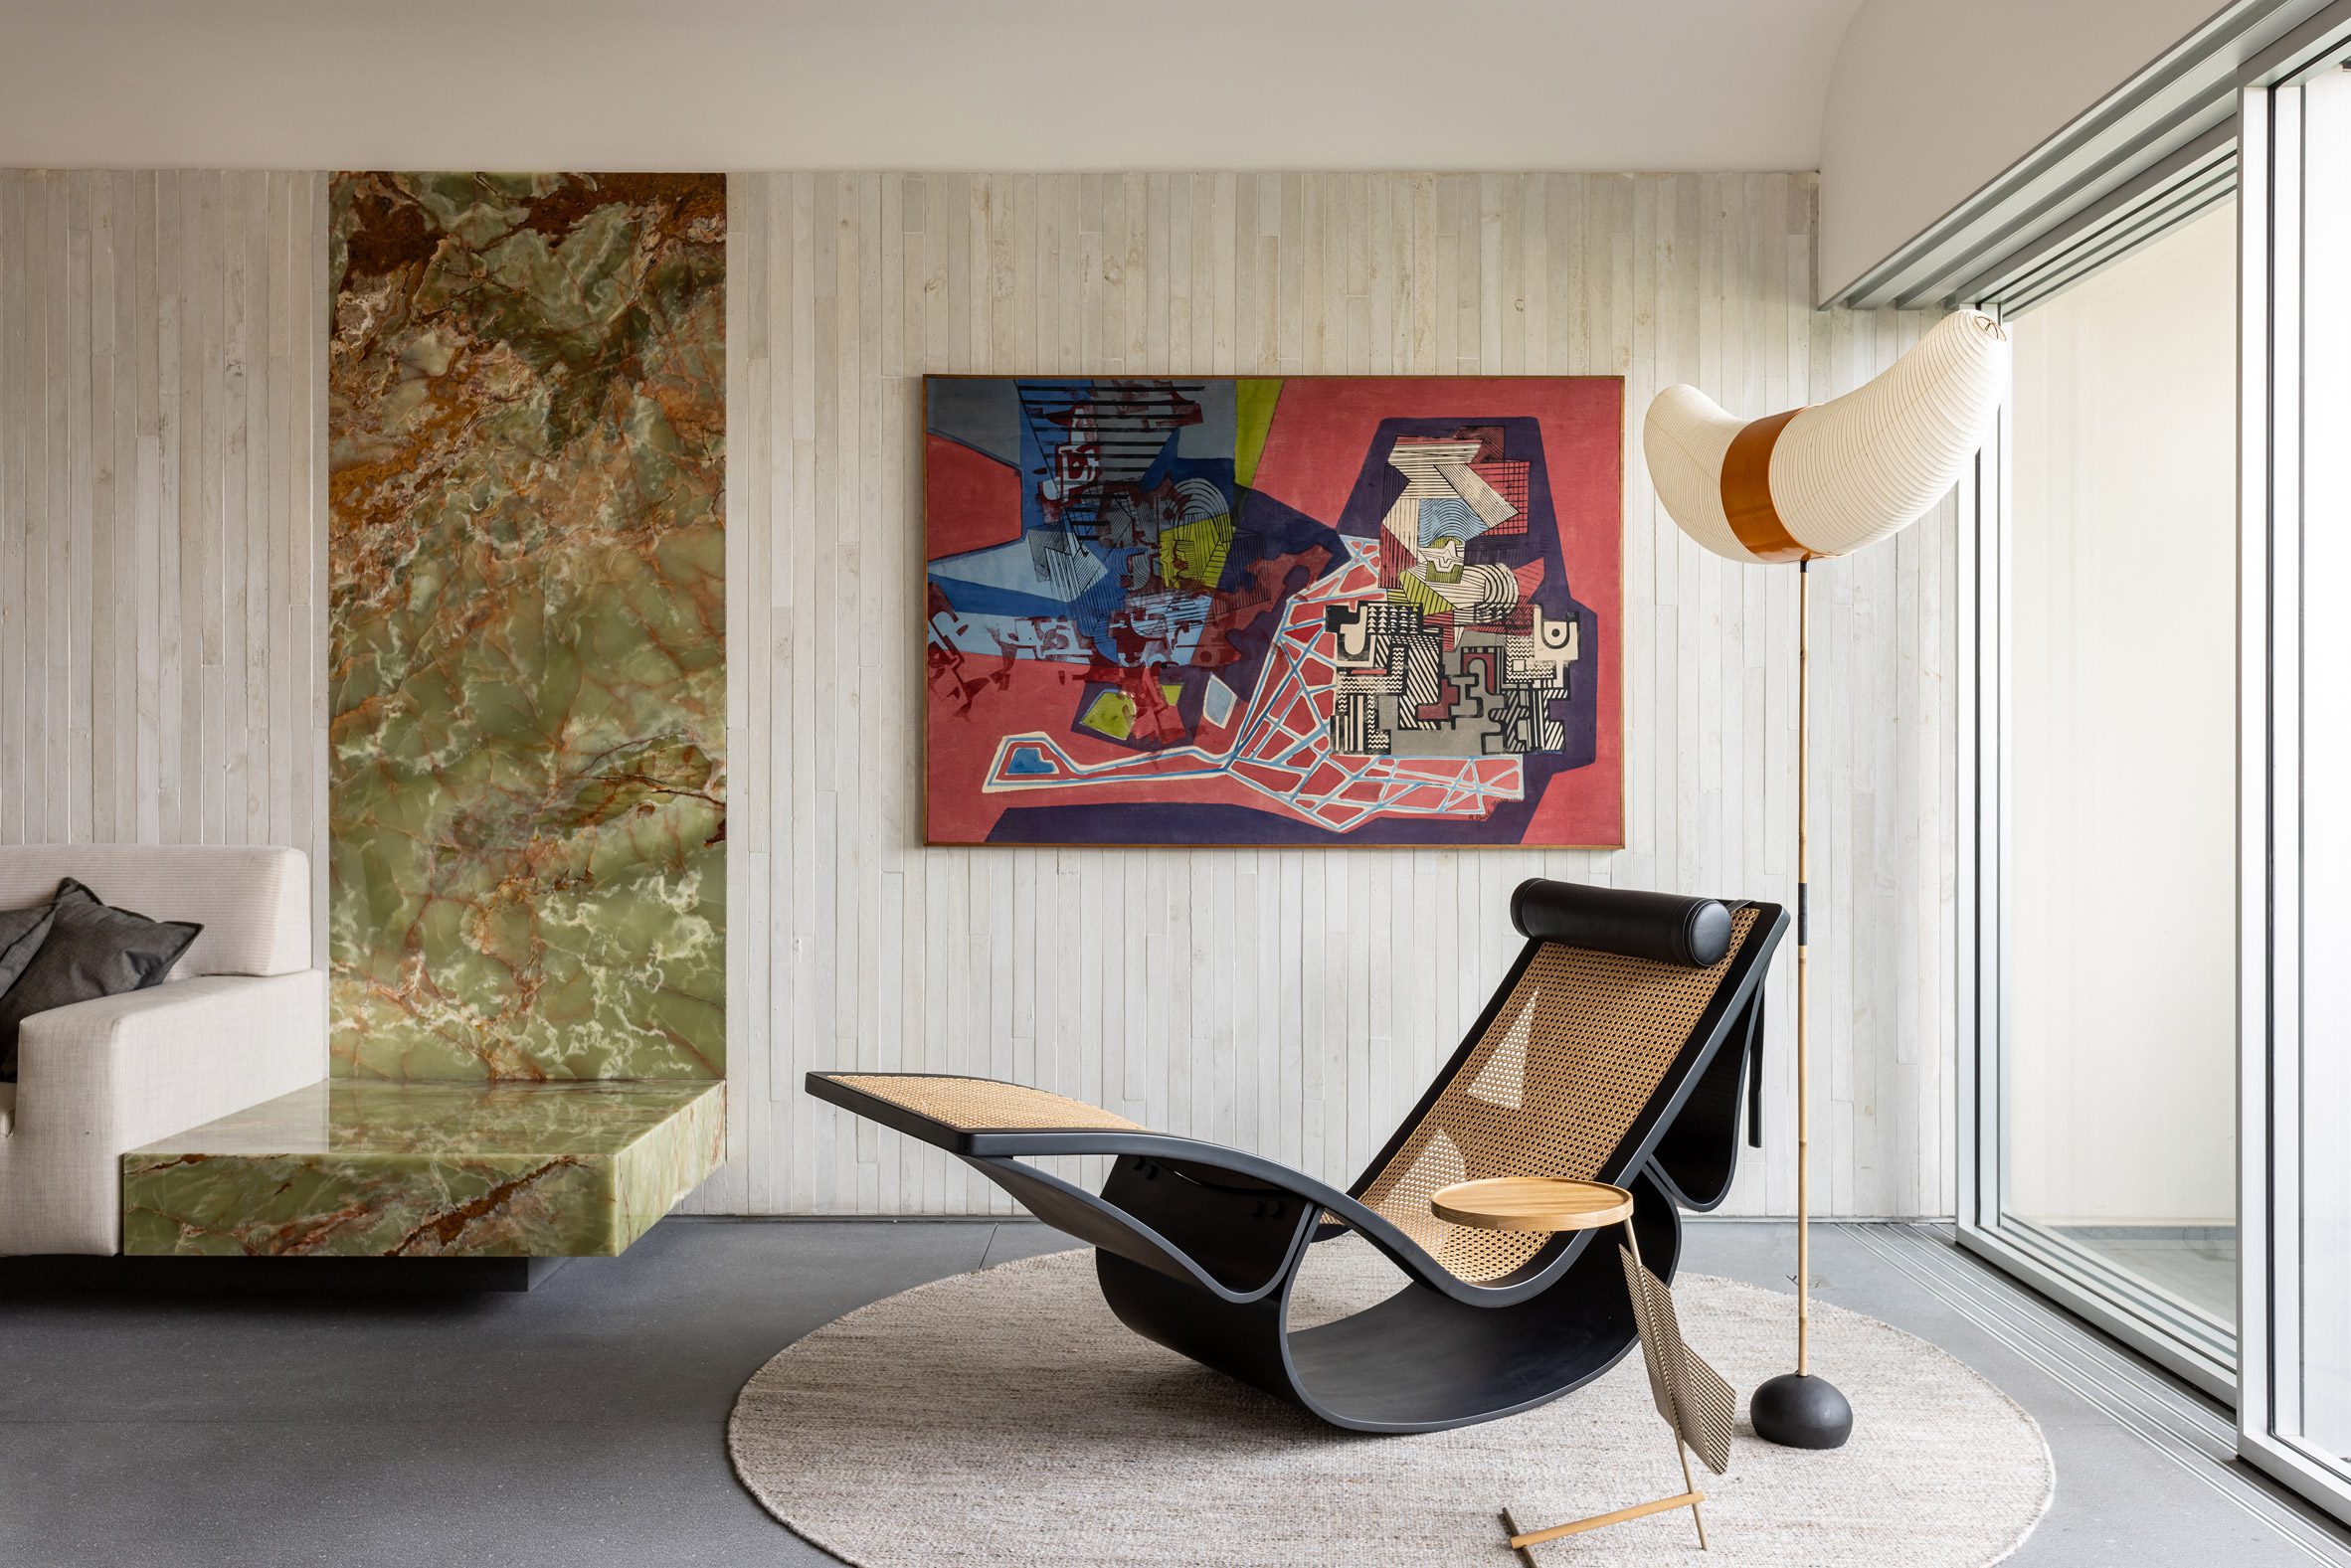 Green office chairs, green carpet. Oscar Niemeyer